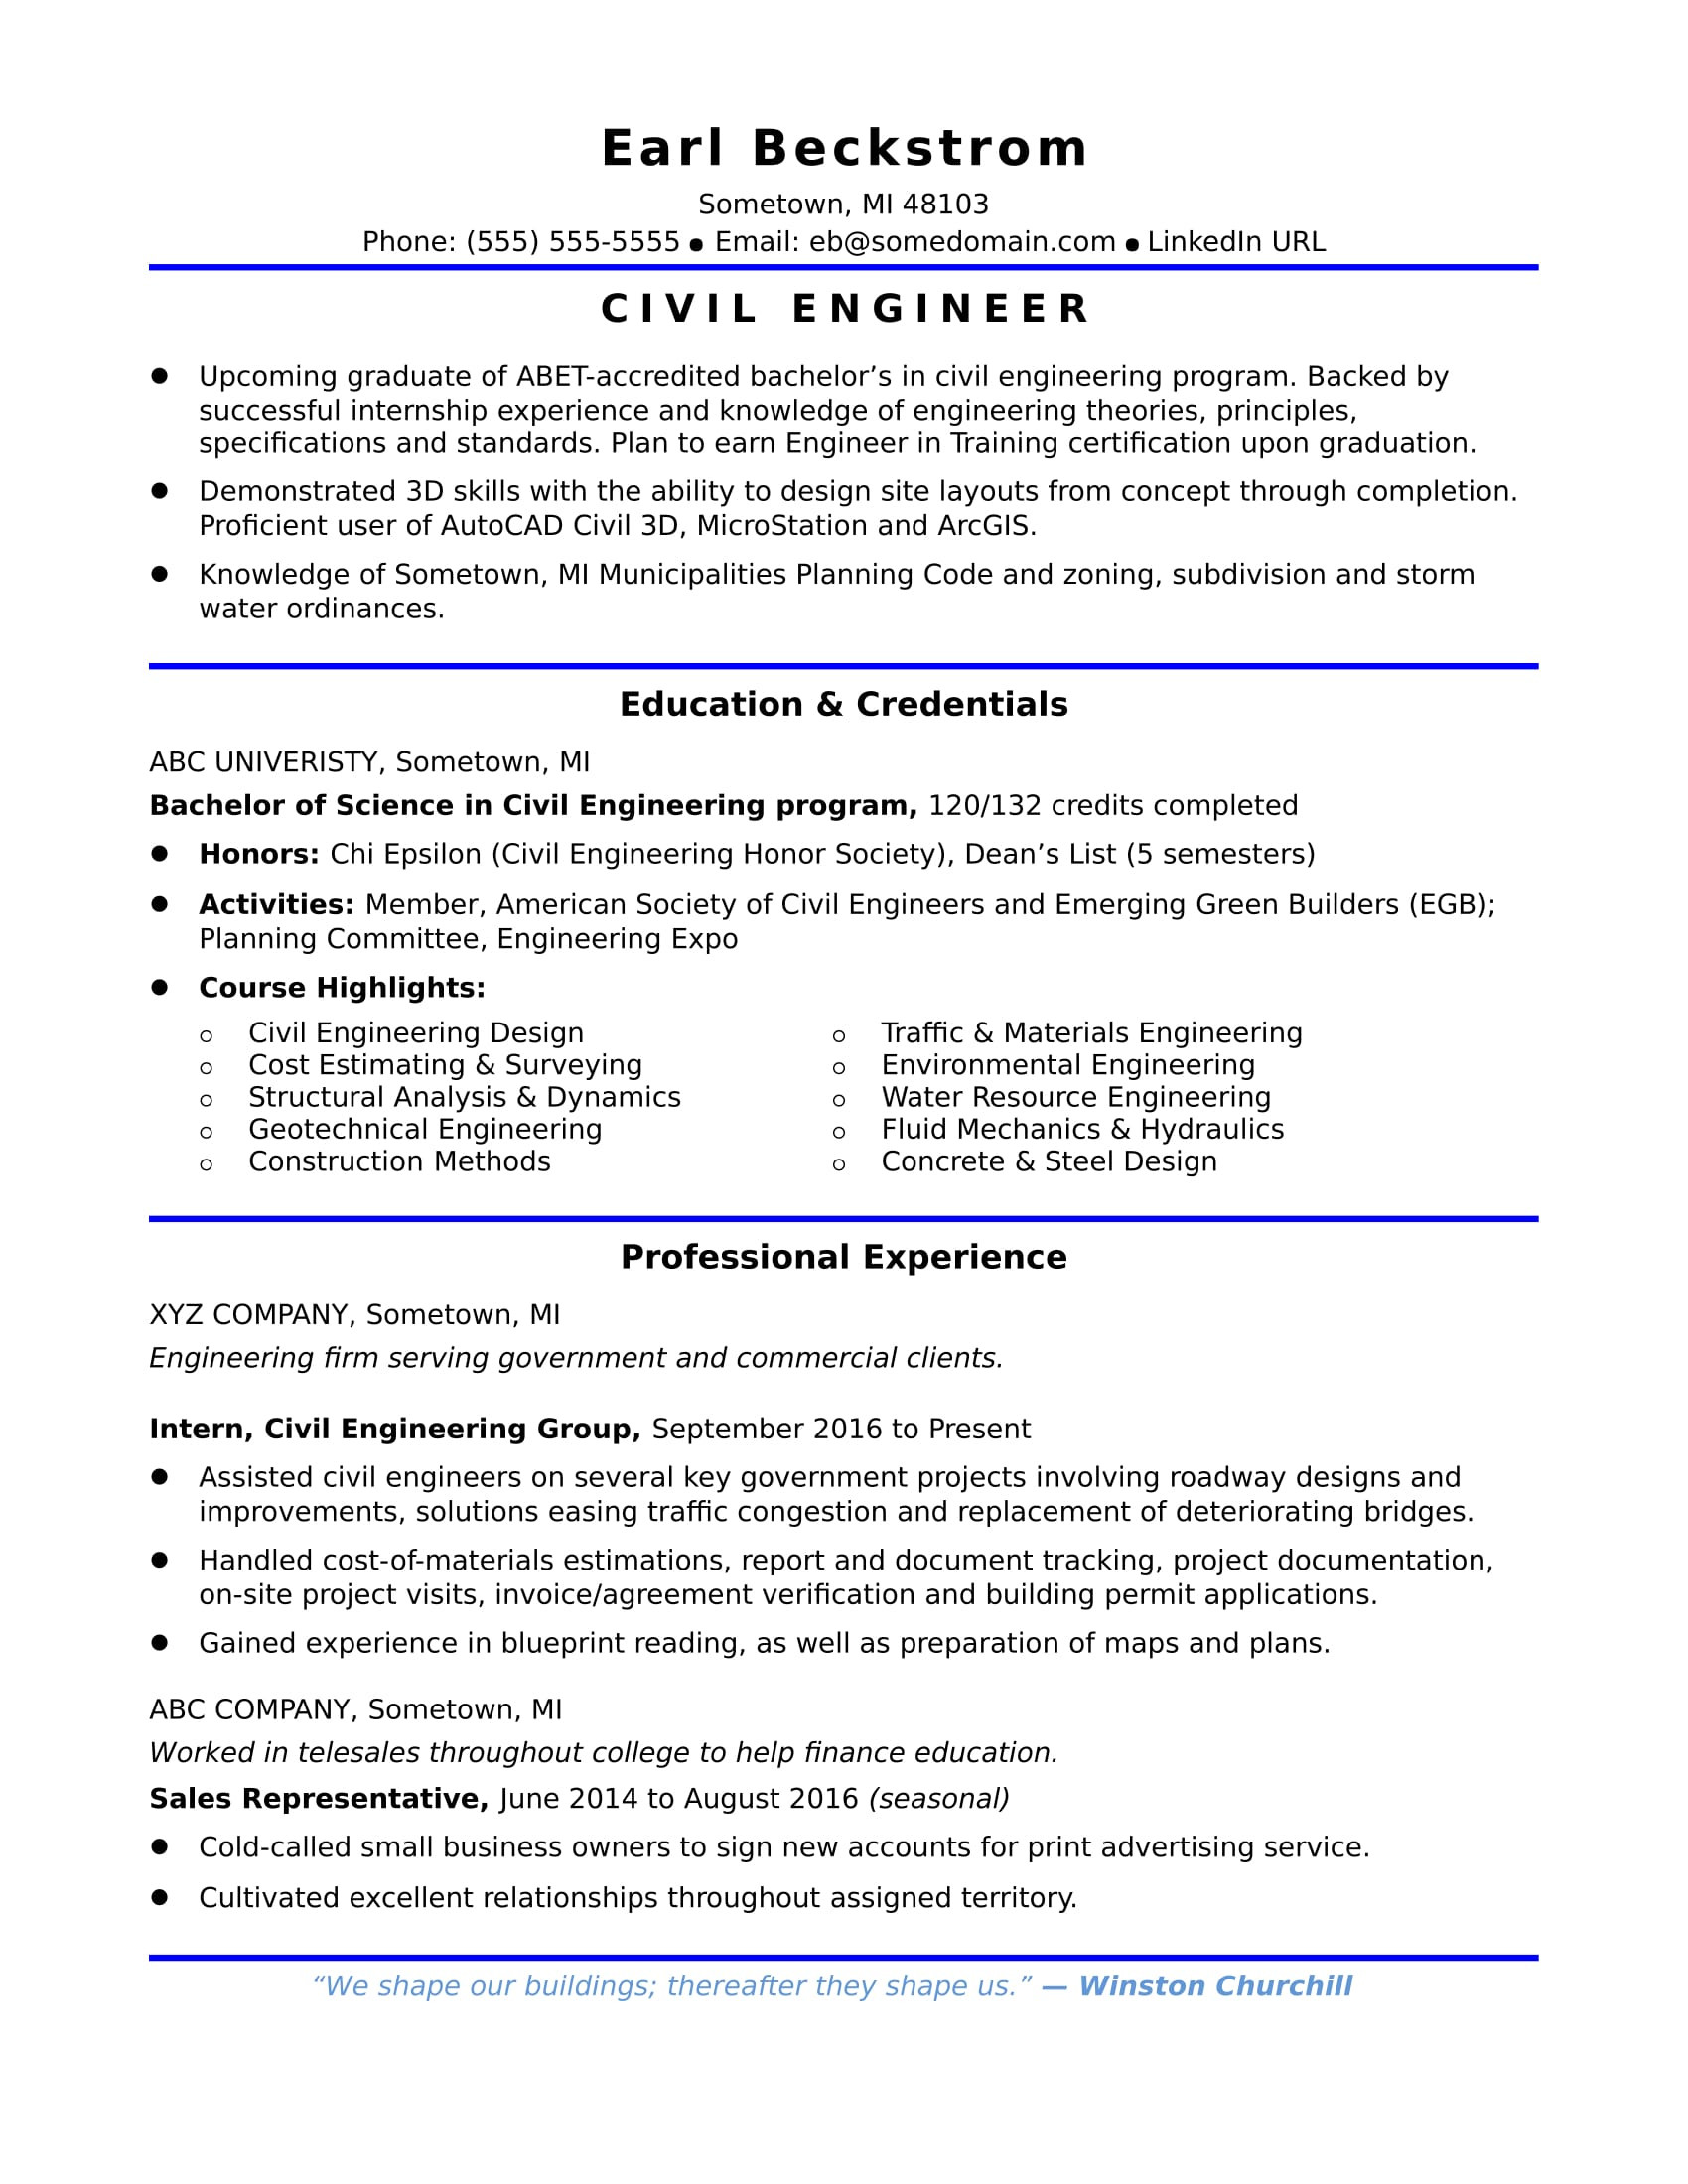 Civil Engineer Resume Sample for Freshers Entry-level Civil Engineering Resume Monster.com